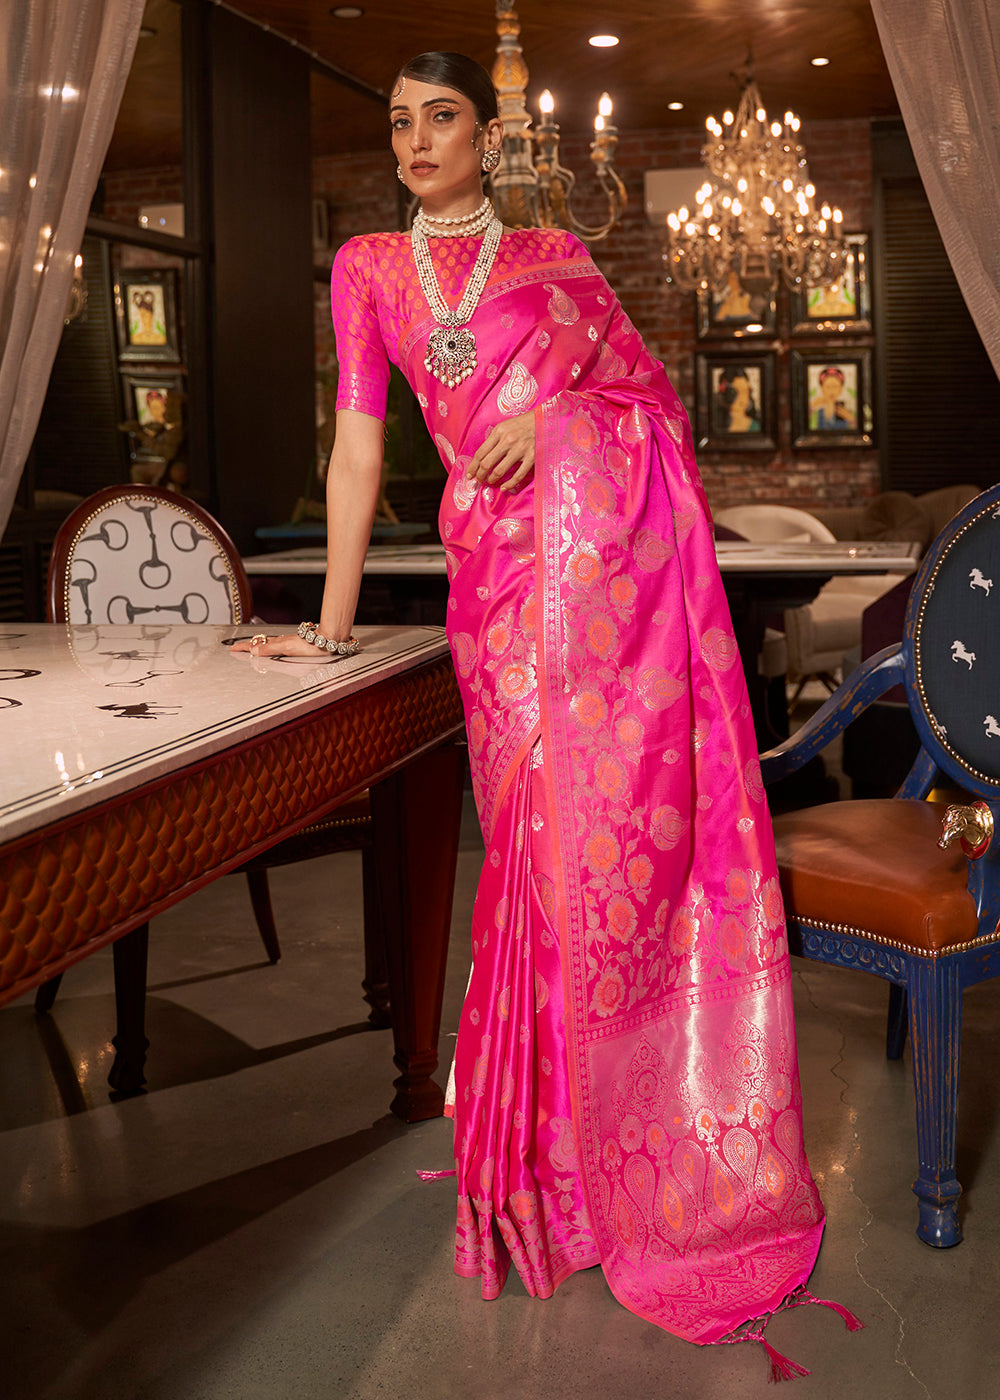 Buy Now Wild Strawberry Pink Fascinating Zari Weaving Banarasi Silk Saree Online in USA, UK, Canada & Worldwide at Empress Clothing.